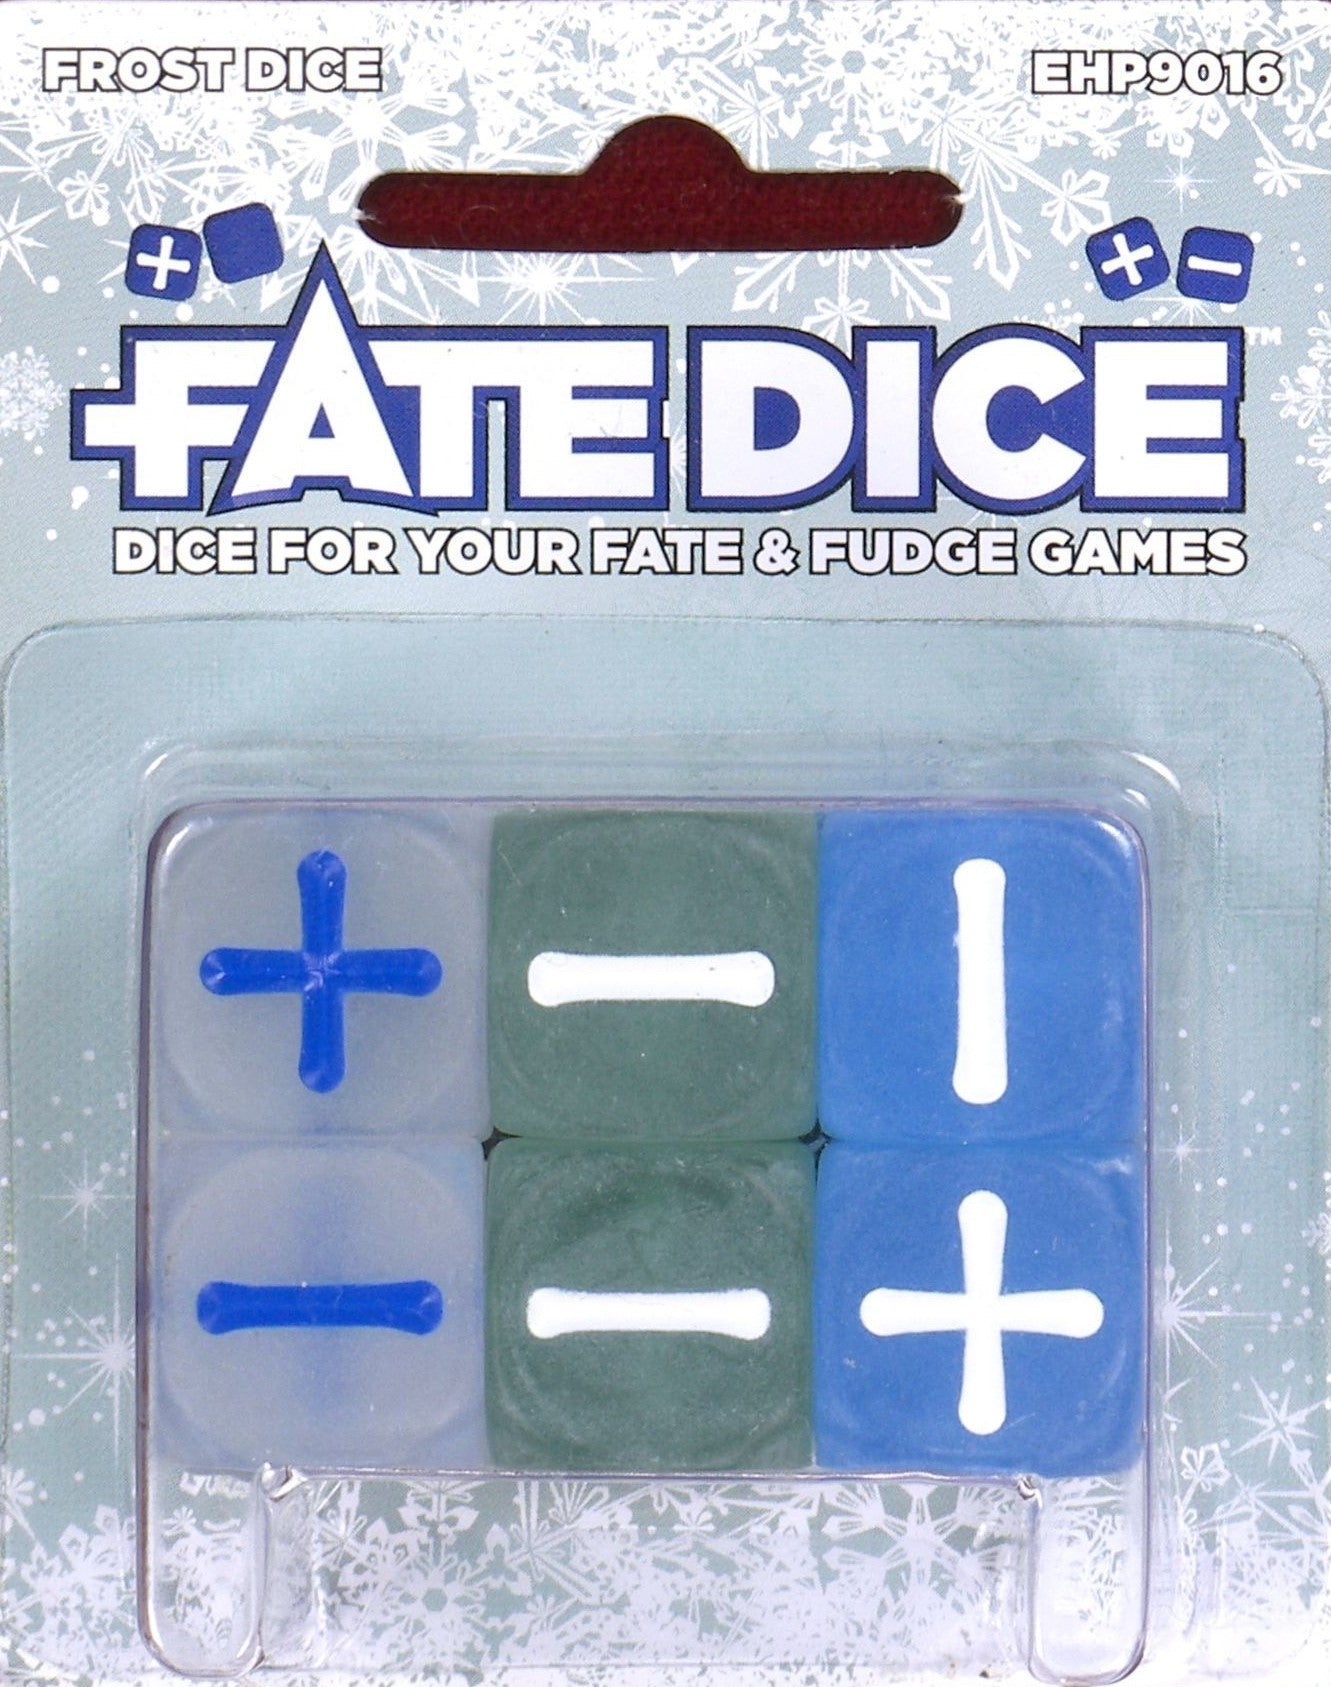 Fate Dice- Frost Dice